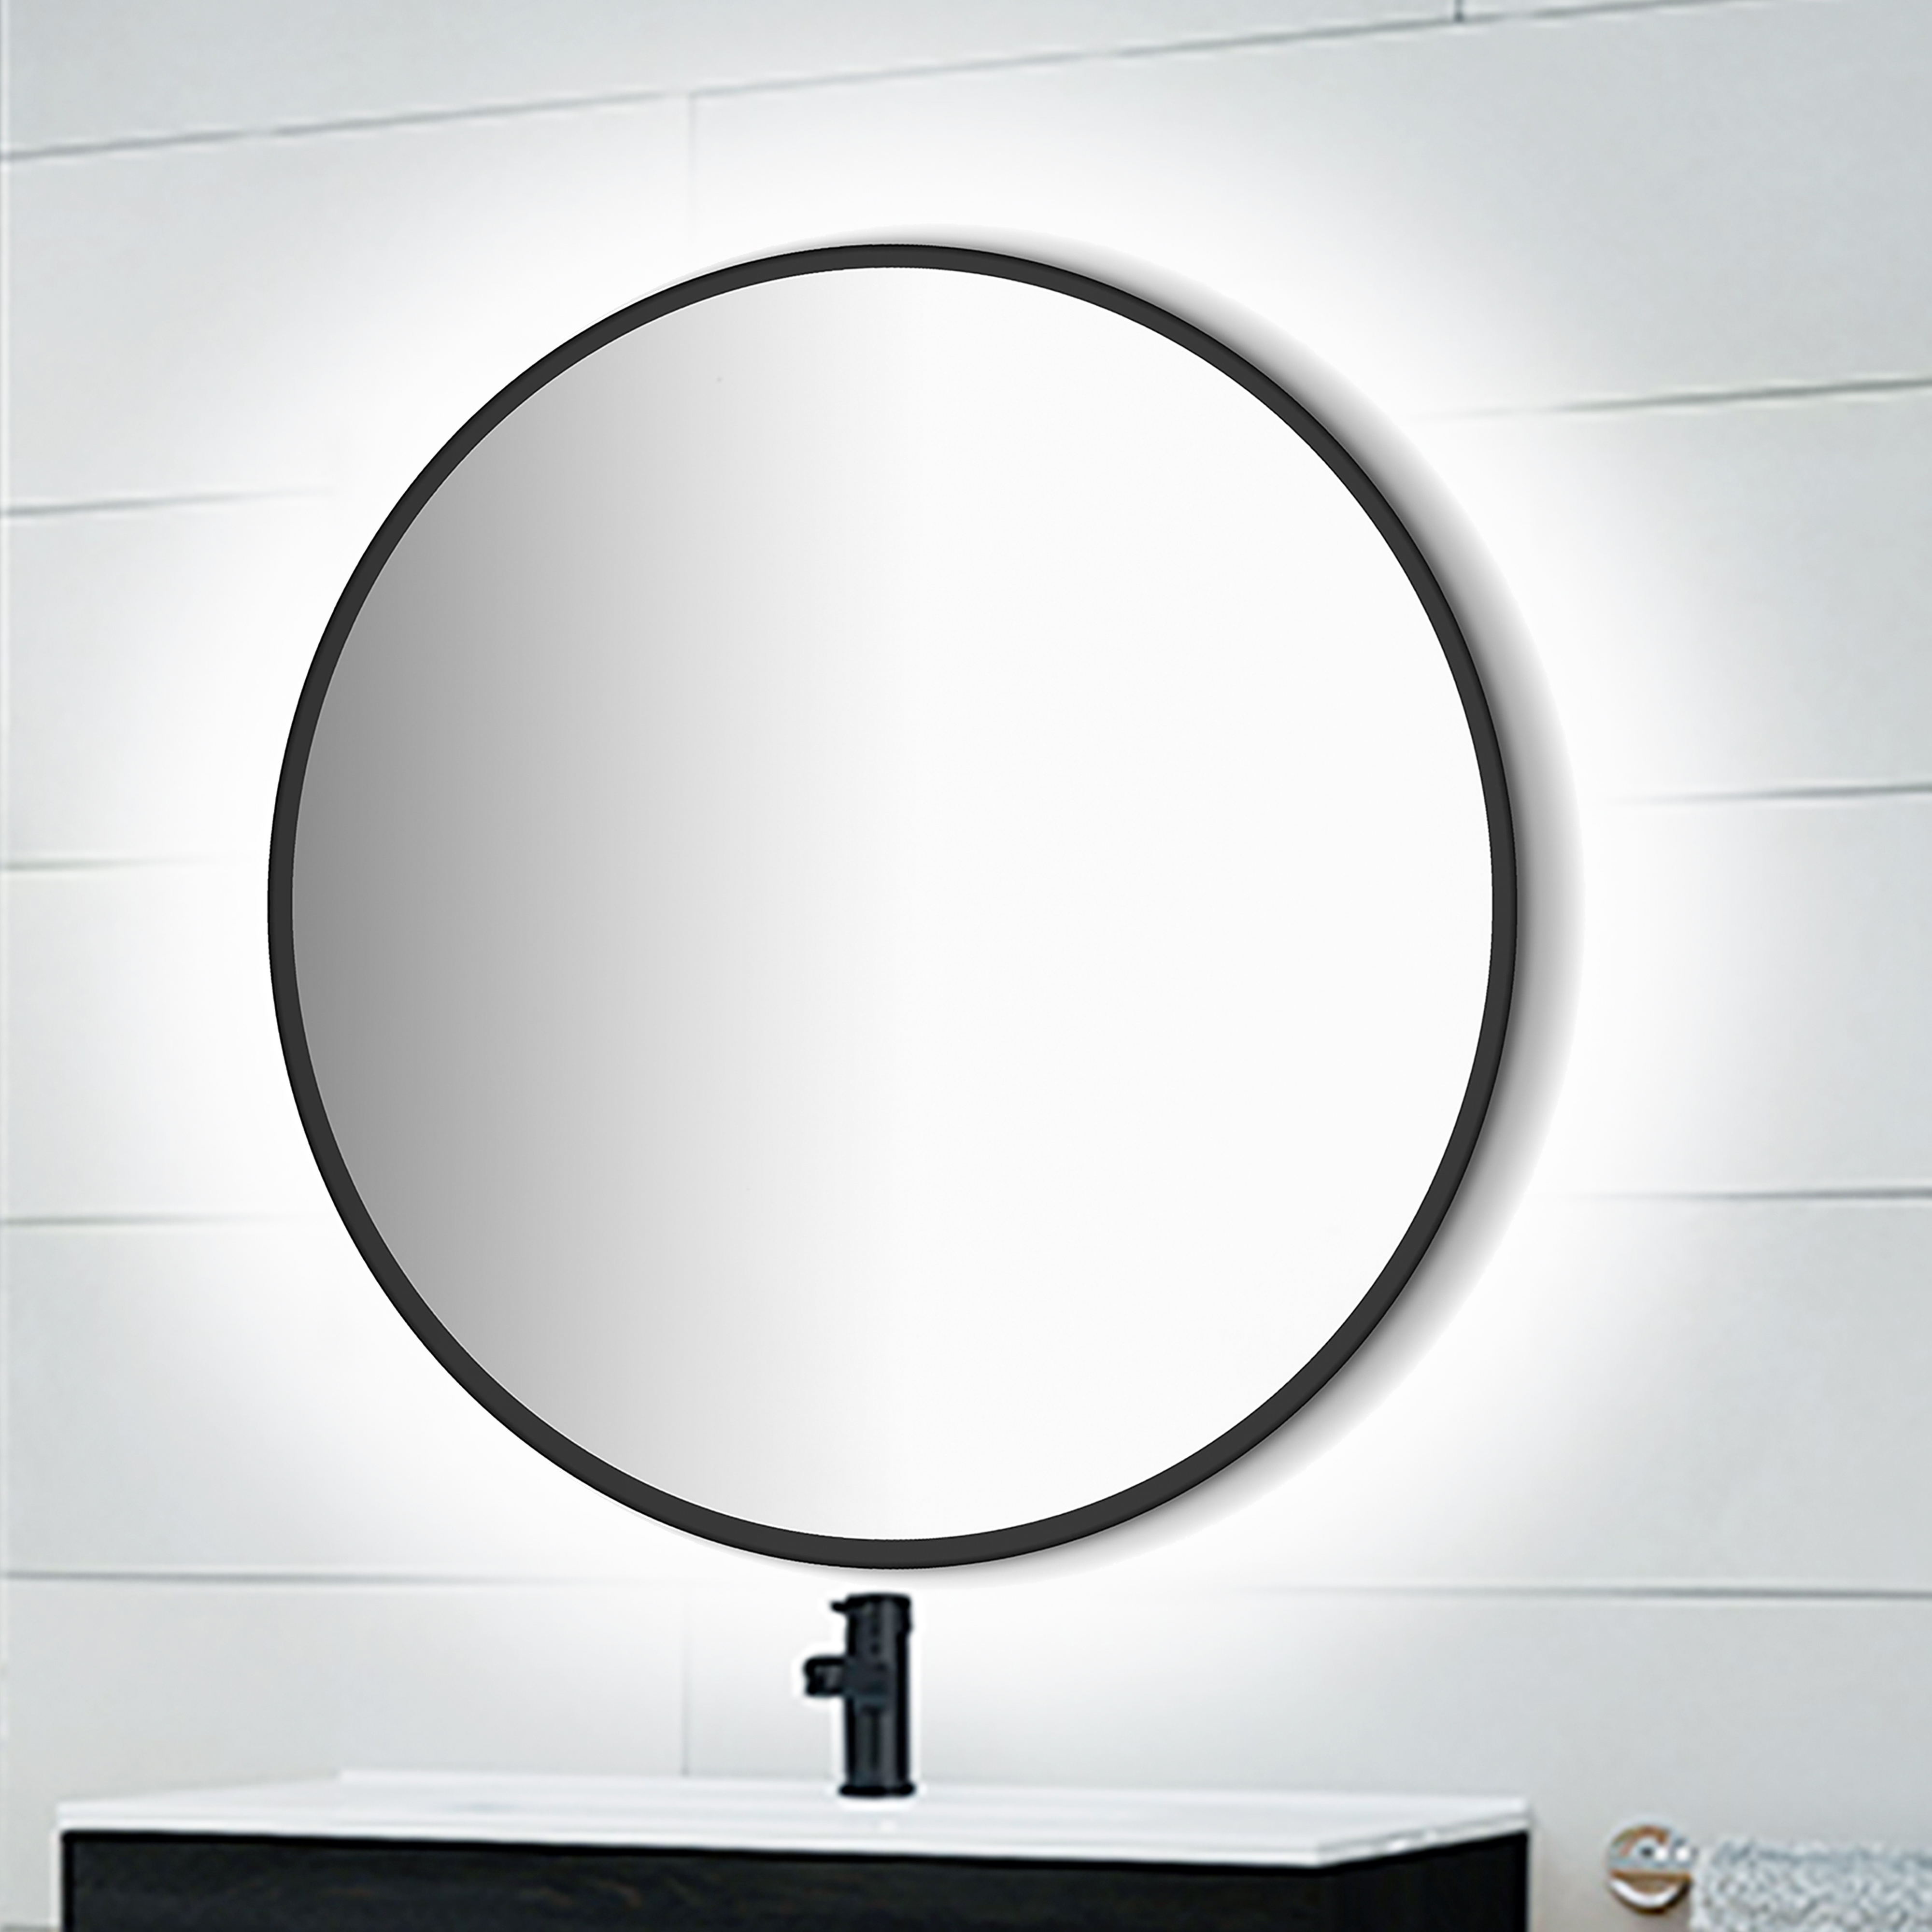  Miroir Zeus avec eclairage decoratif a LED et cadre noir, diametre 80 cm, AC 230V 50Hz, 12 W, Aluminium et Verre